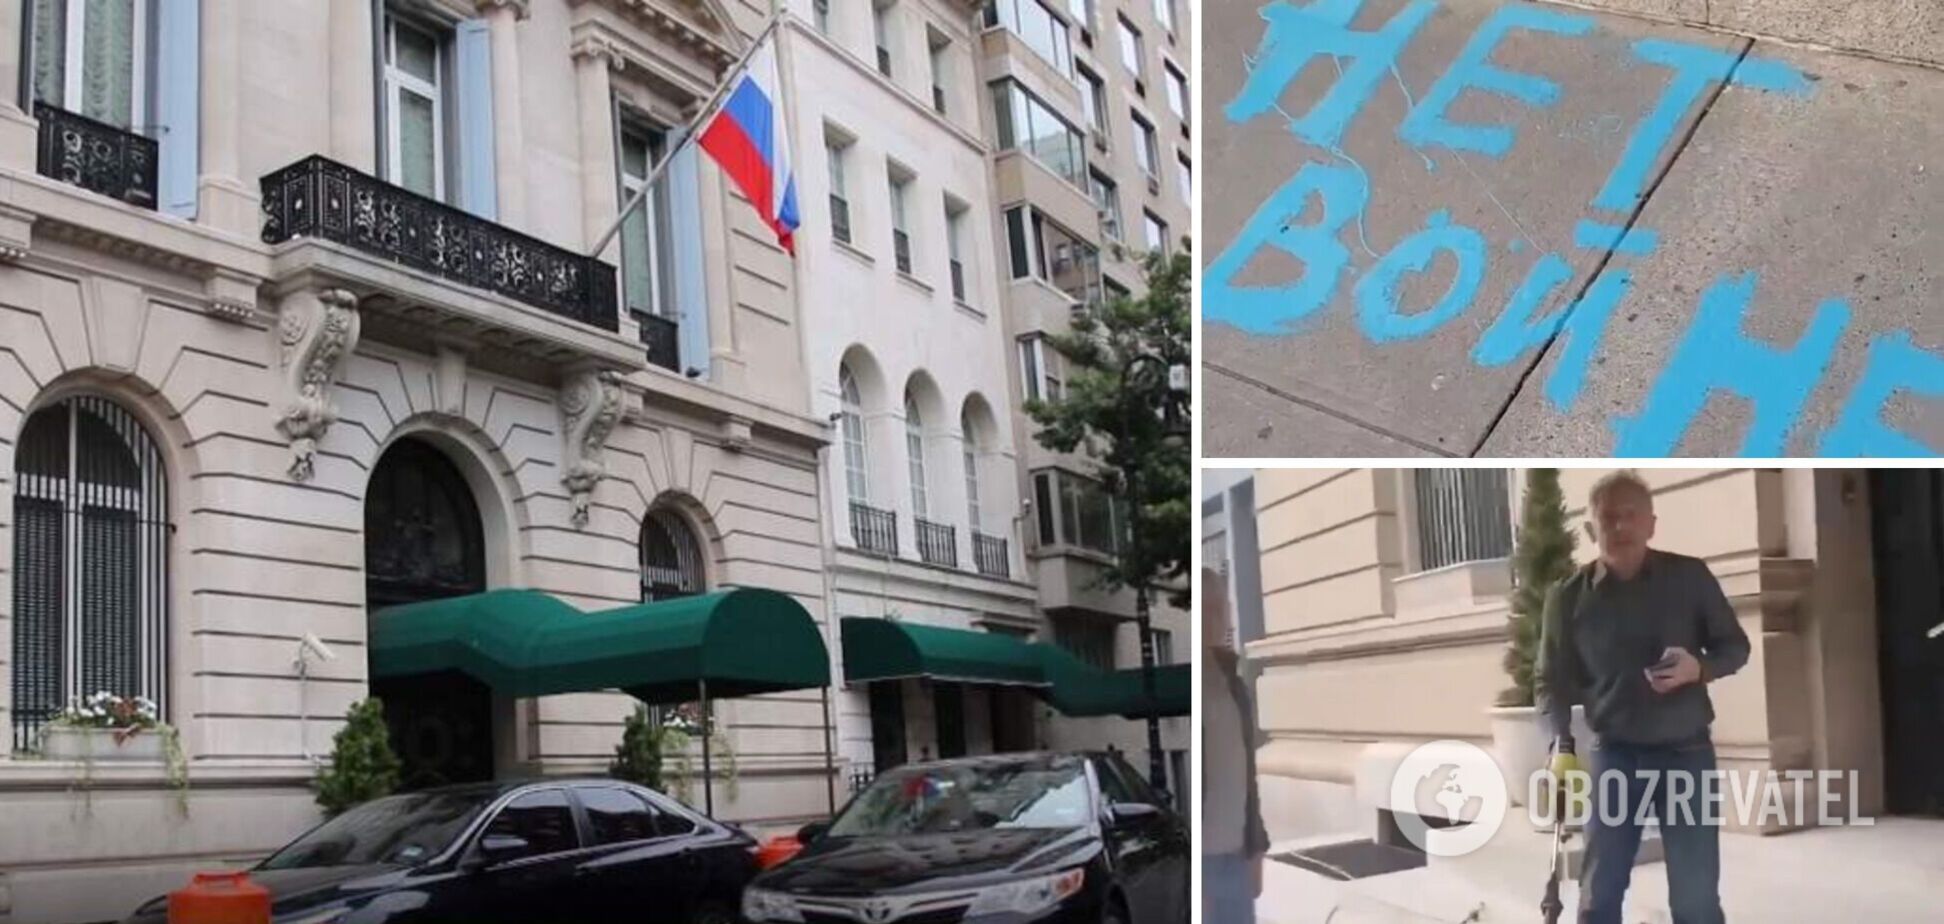 В Нью-Йорке перед генконсульством России мужчина написал краской 'Нет войне': дипломаты попытались смыть фразу. Видео